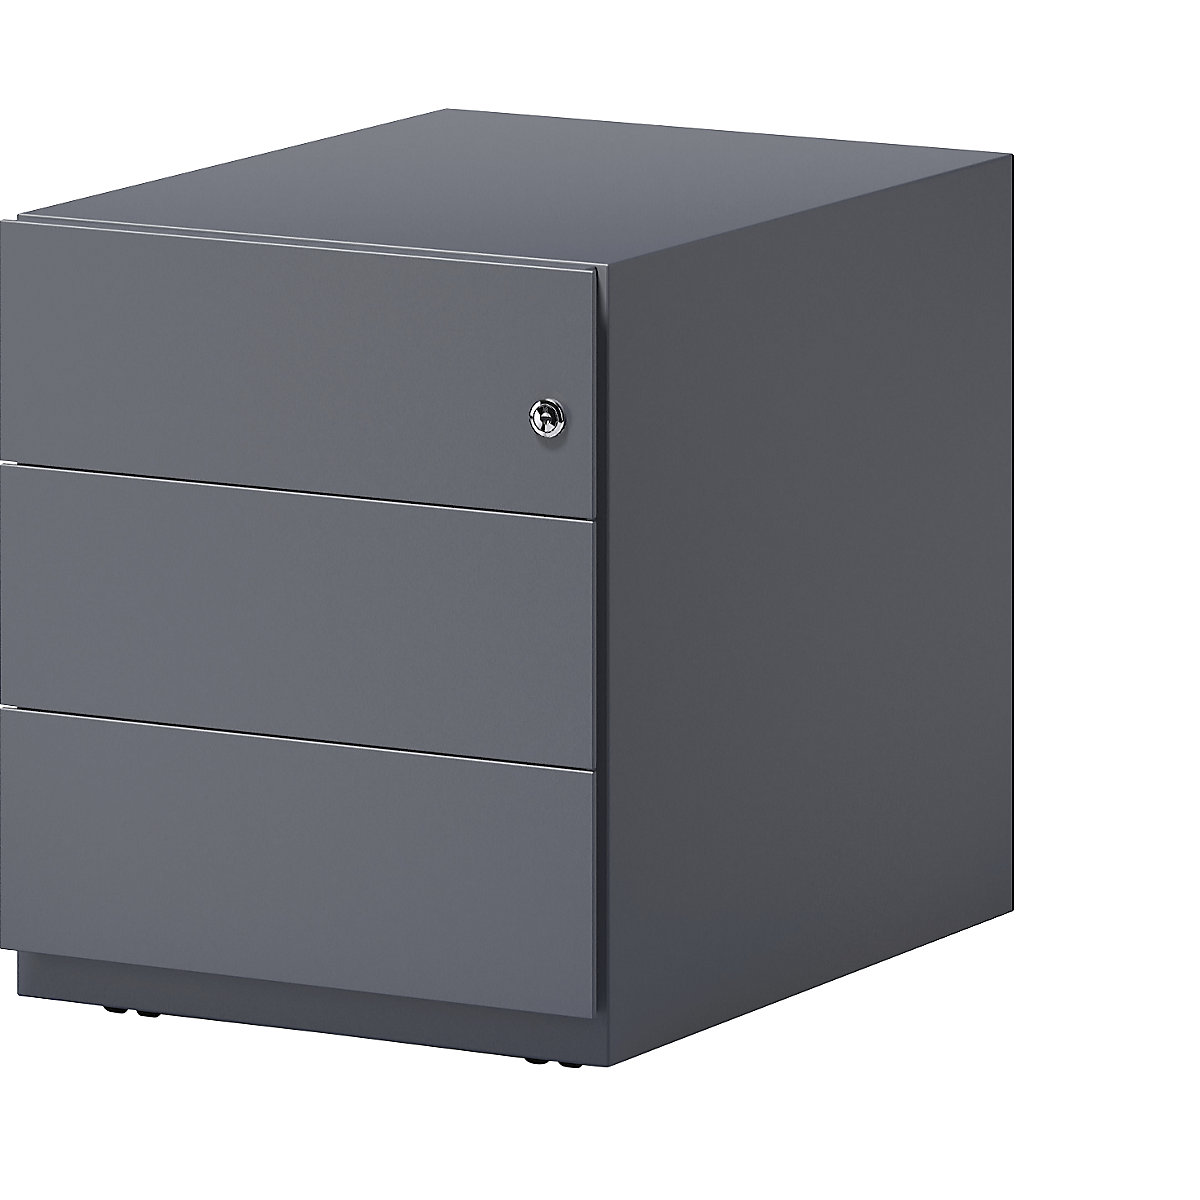 BISLEY Rollcontainer Note™, mit 3 Universalschubladen, HxBxT 495 x 420 x 565 mm, mit Griffleiste, anthrazitgrau